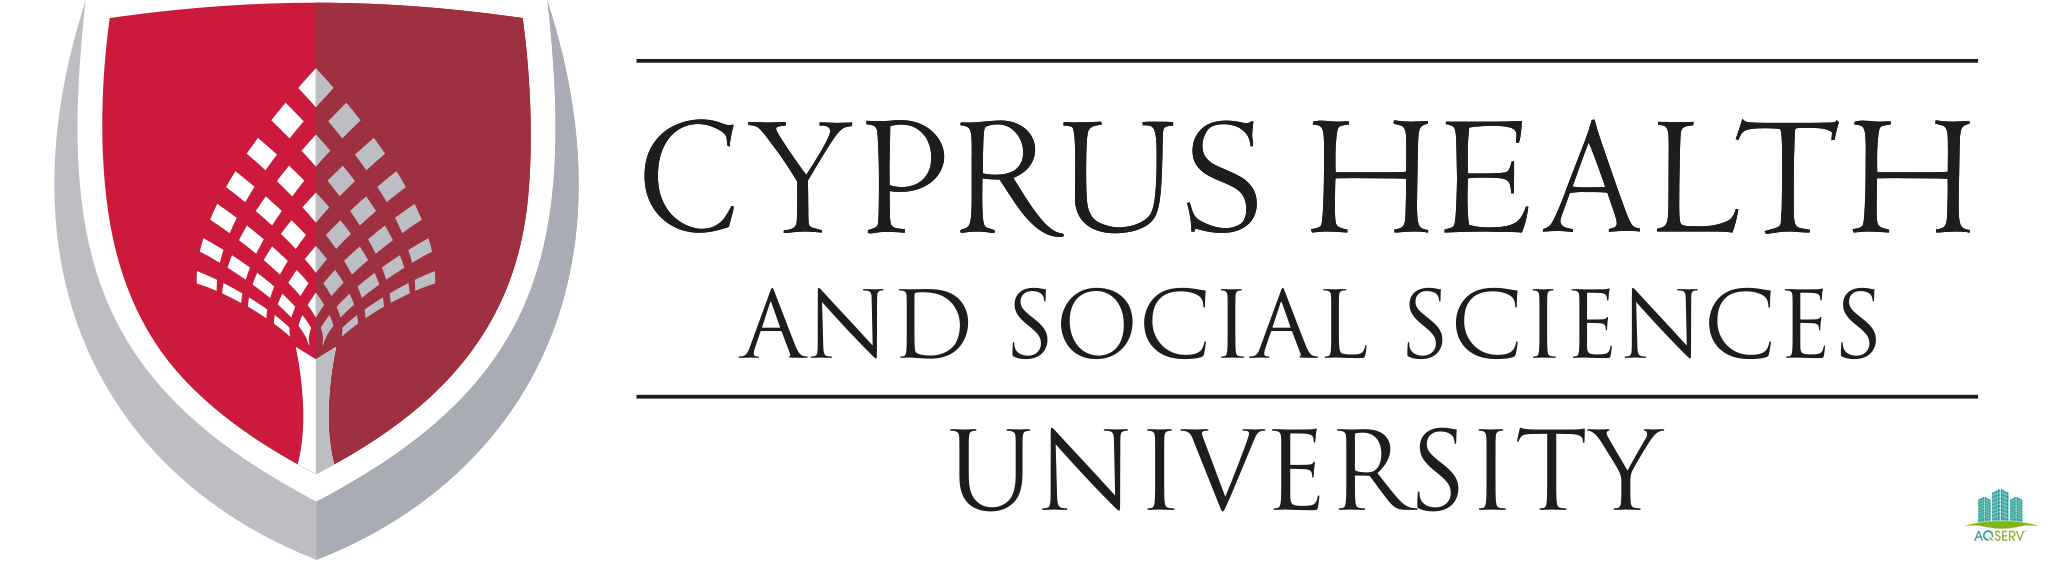 جامعة قبرص للعلوم الصحية والاجتماعية Cyprus Health and Social Sciences University